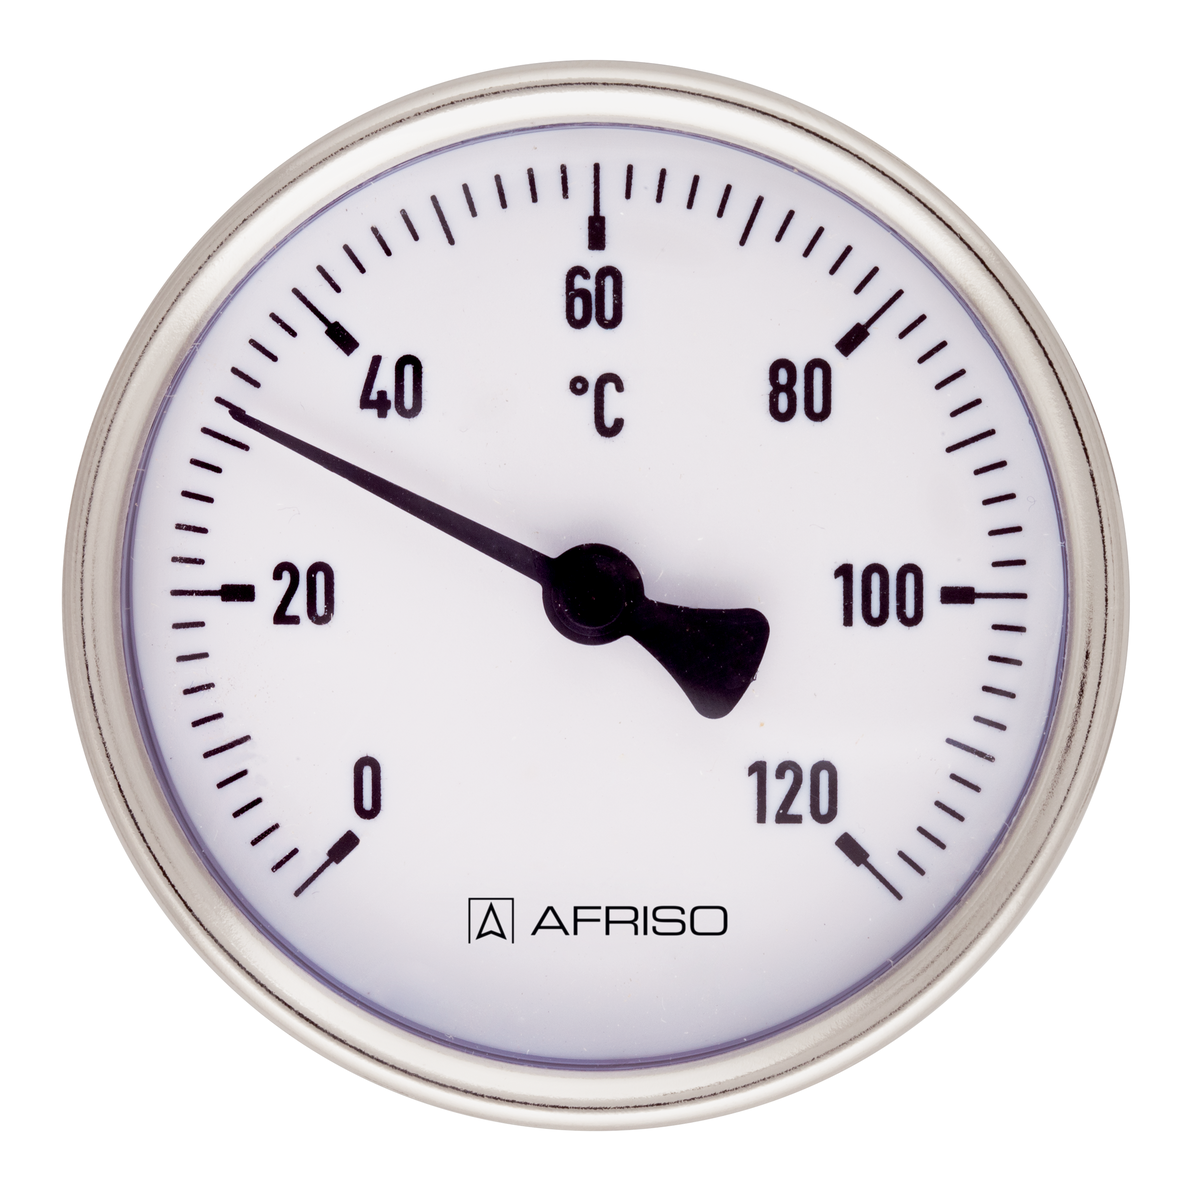 Bimetalový teploměr BiTh 80 ST, Ø 80 mm, 0 ÷ 120 °C, délka jímky 63 mm, G½", axiální - AFRISO.CZ